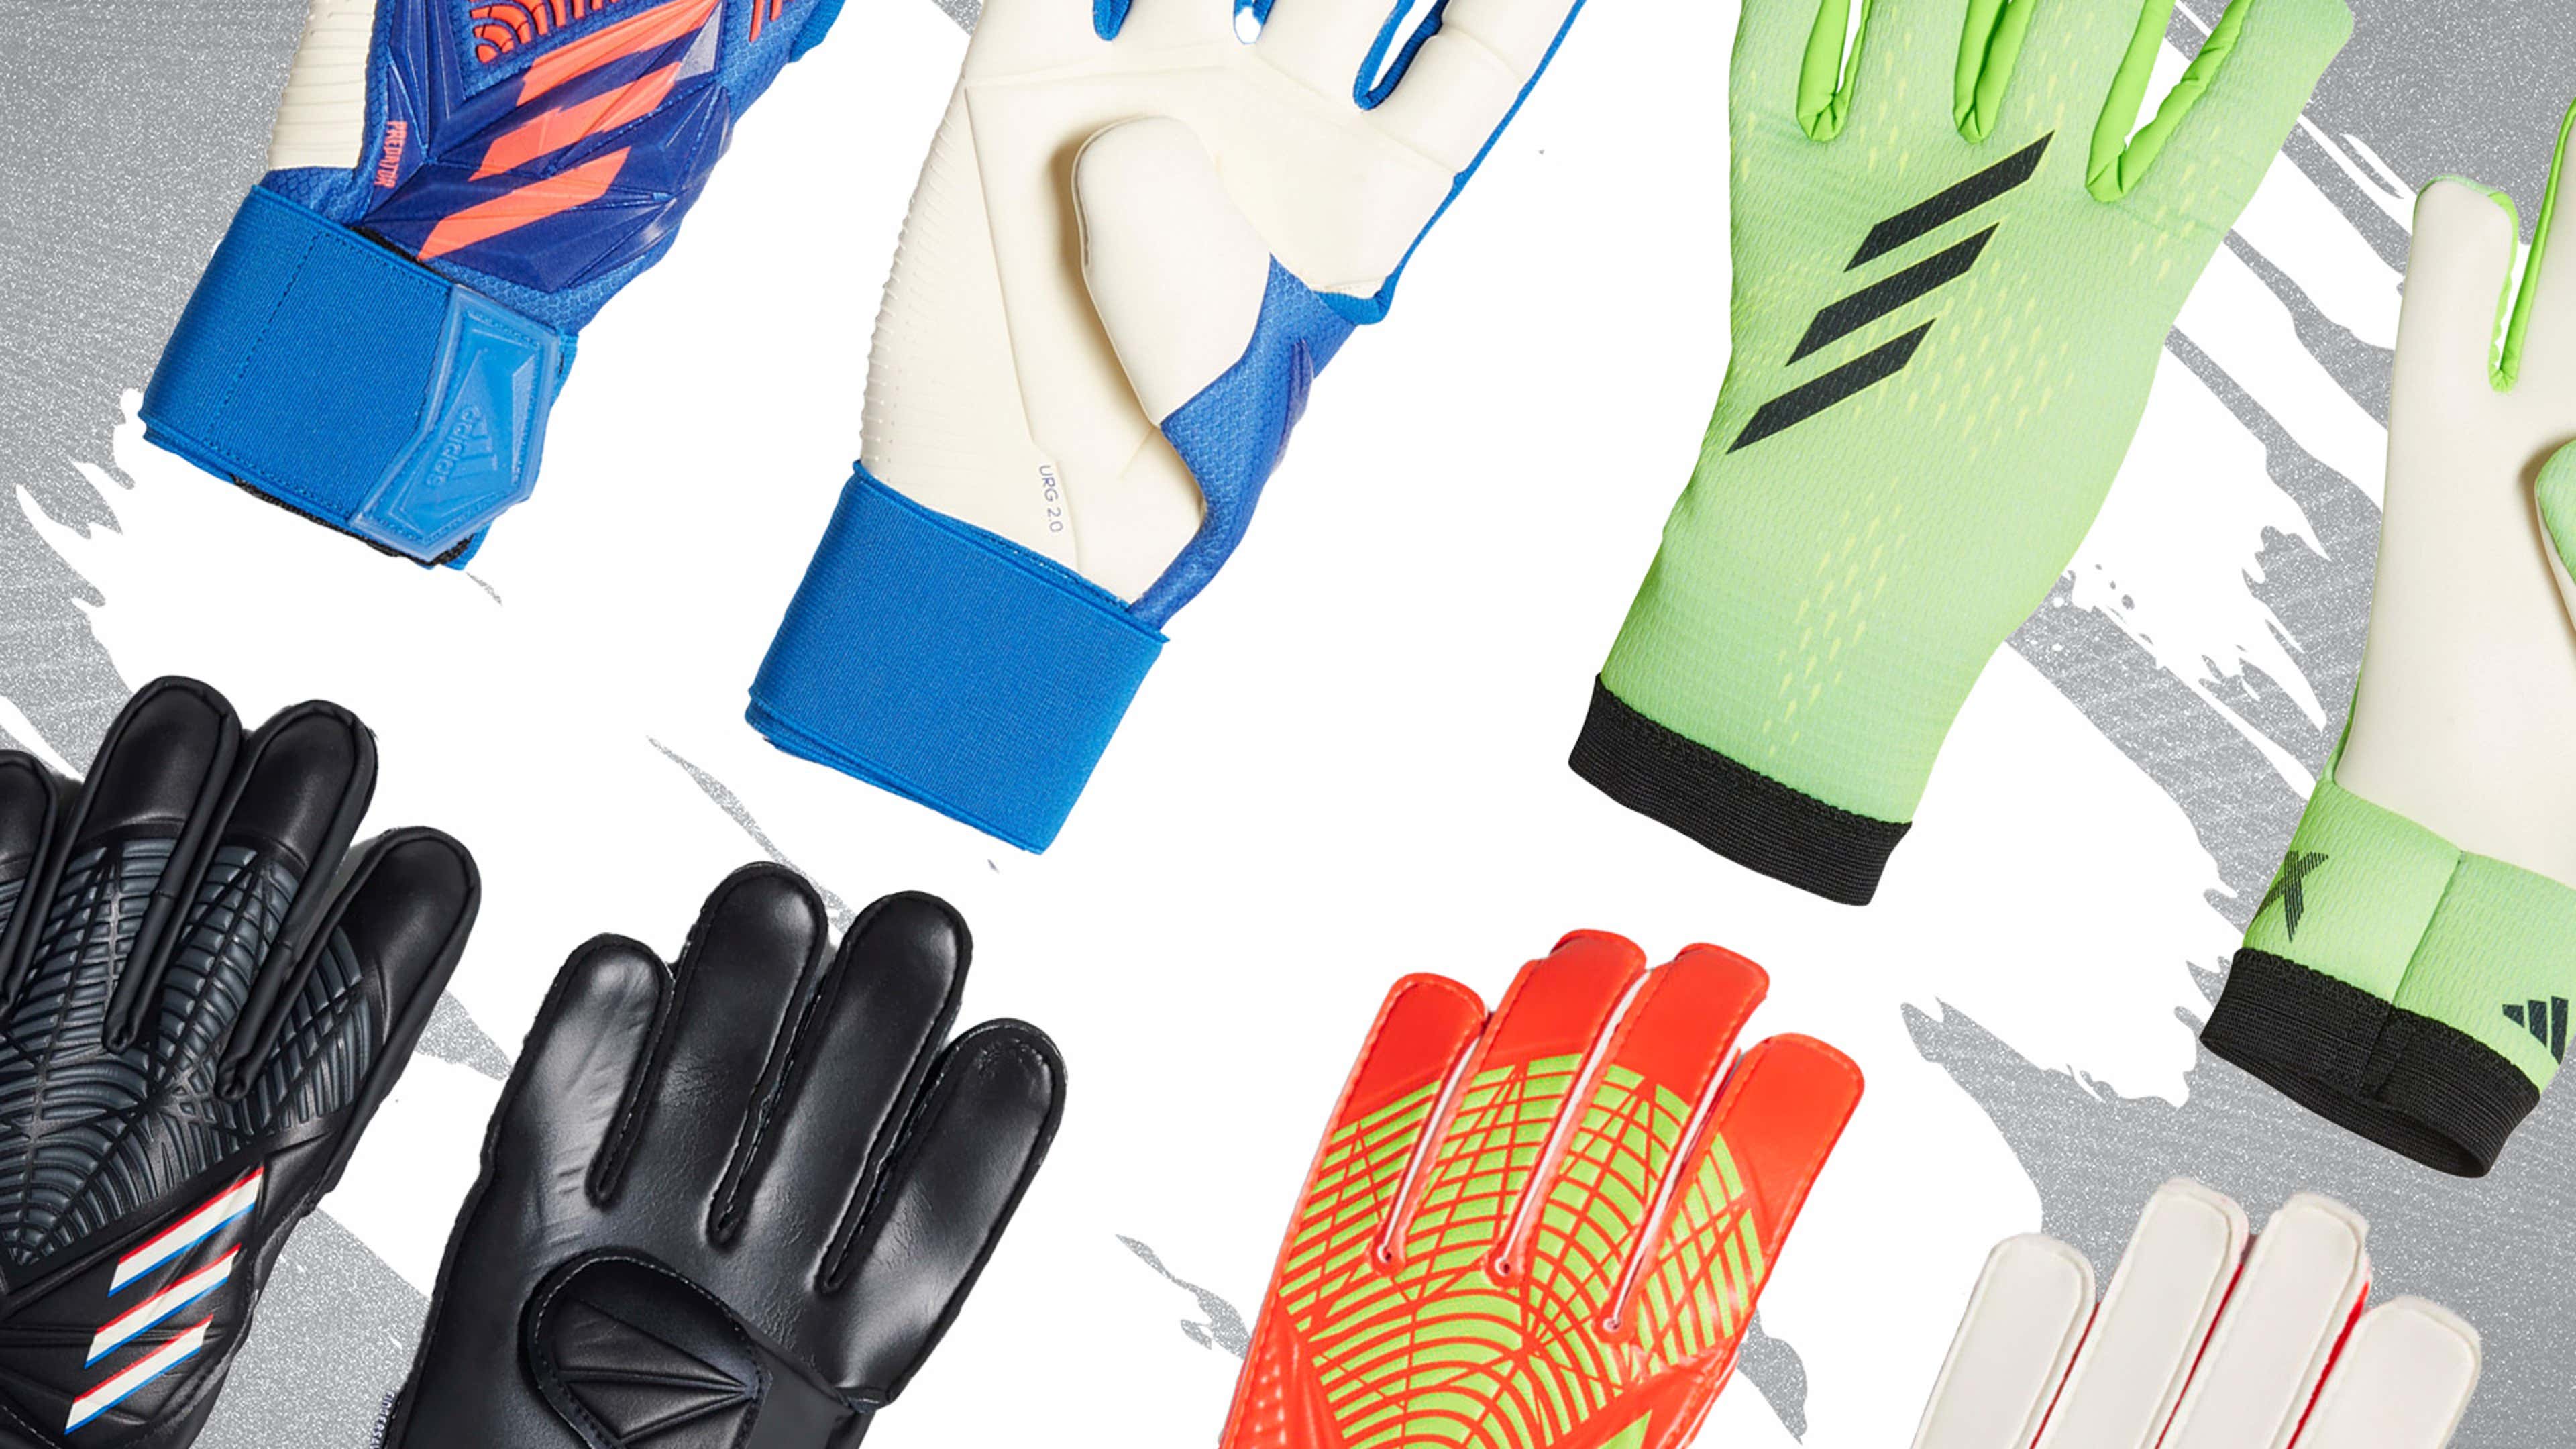 Soccer Goalkeeper Gloves for Kids & Youth, Anti-Slip Soccer Goalie Gloves,  Full Finger Hand Protection Children Football Gloves, for Training and